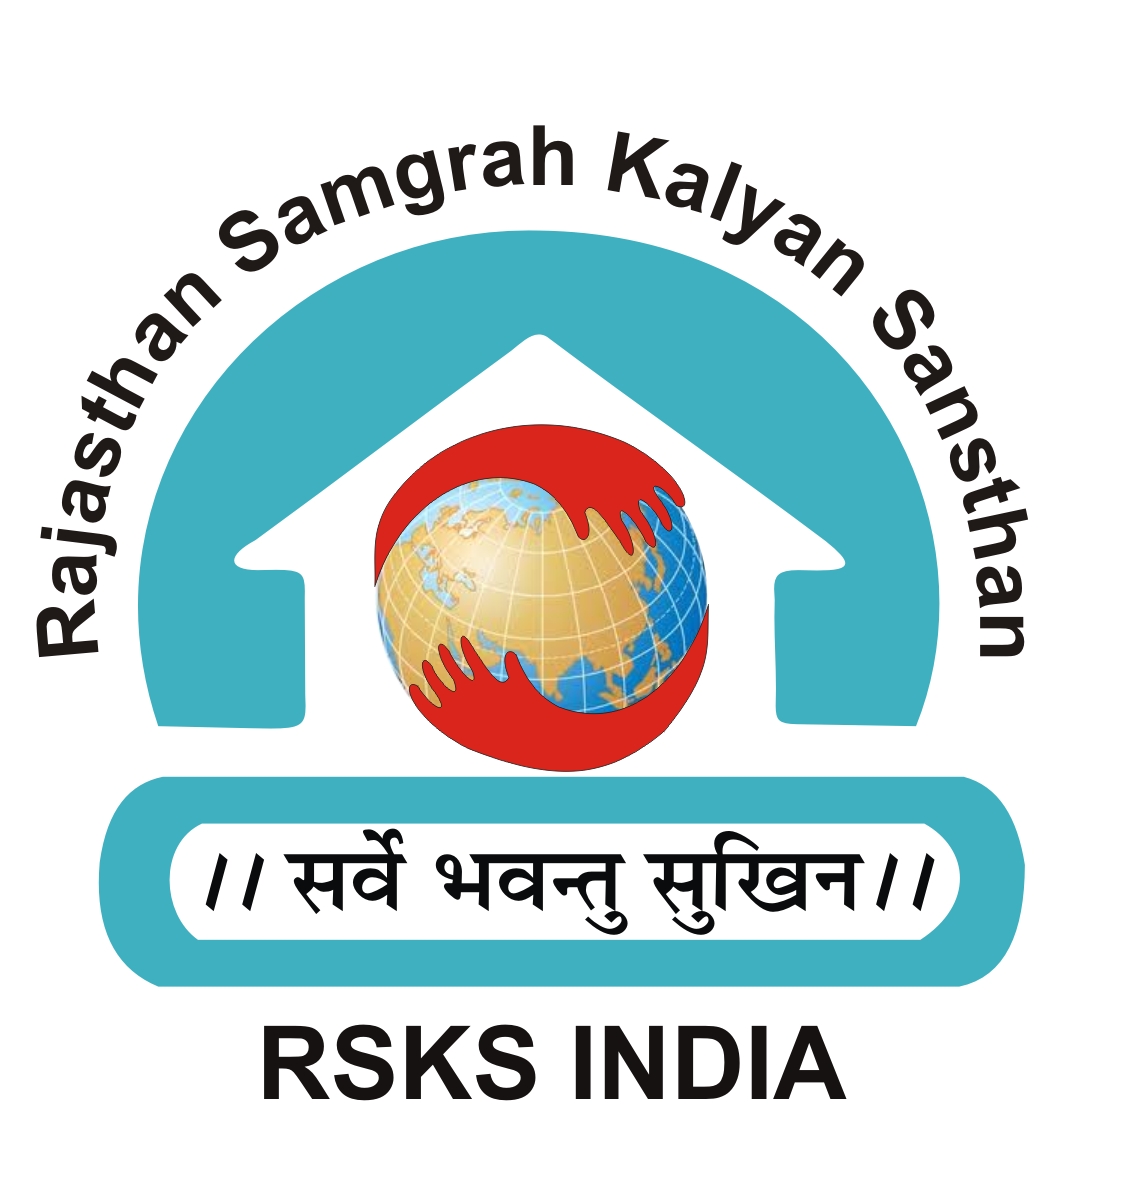 Rajasthan Samgrah Kalyan Sansthan RSKS India